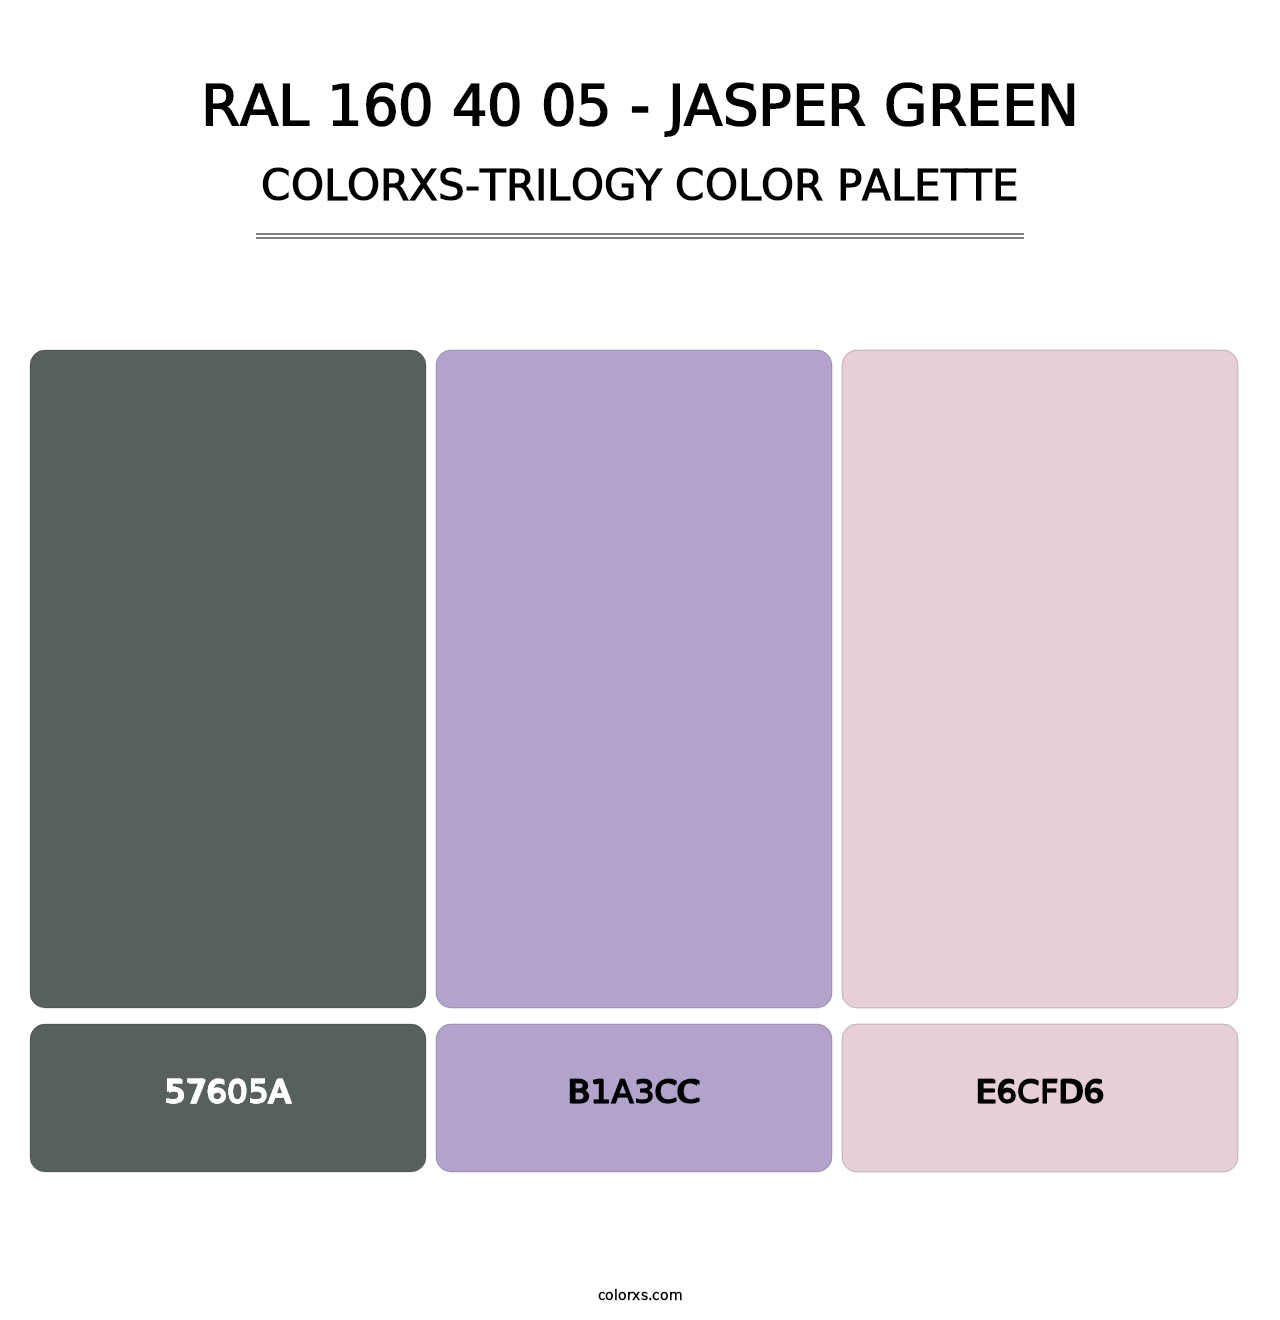 RAL 160 40 05 - Jasper Green - Colorxs Trilogy Palette